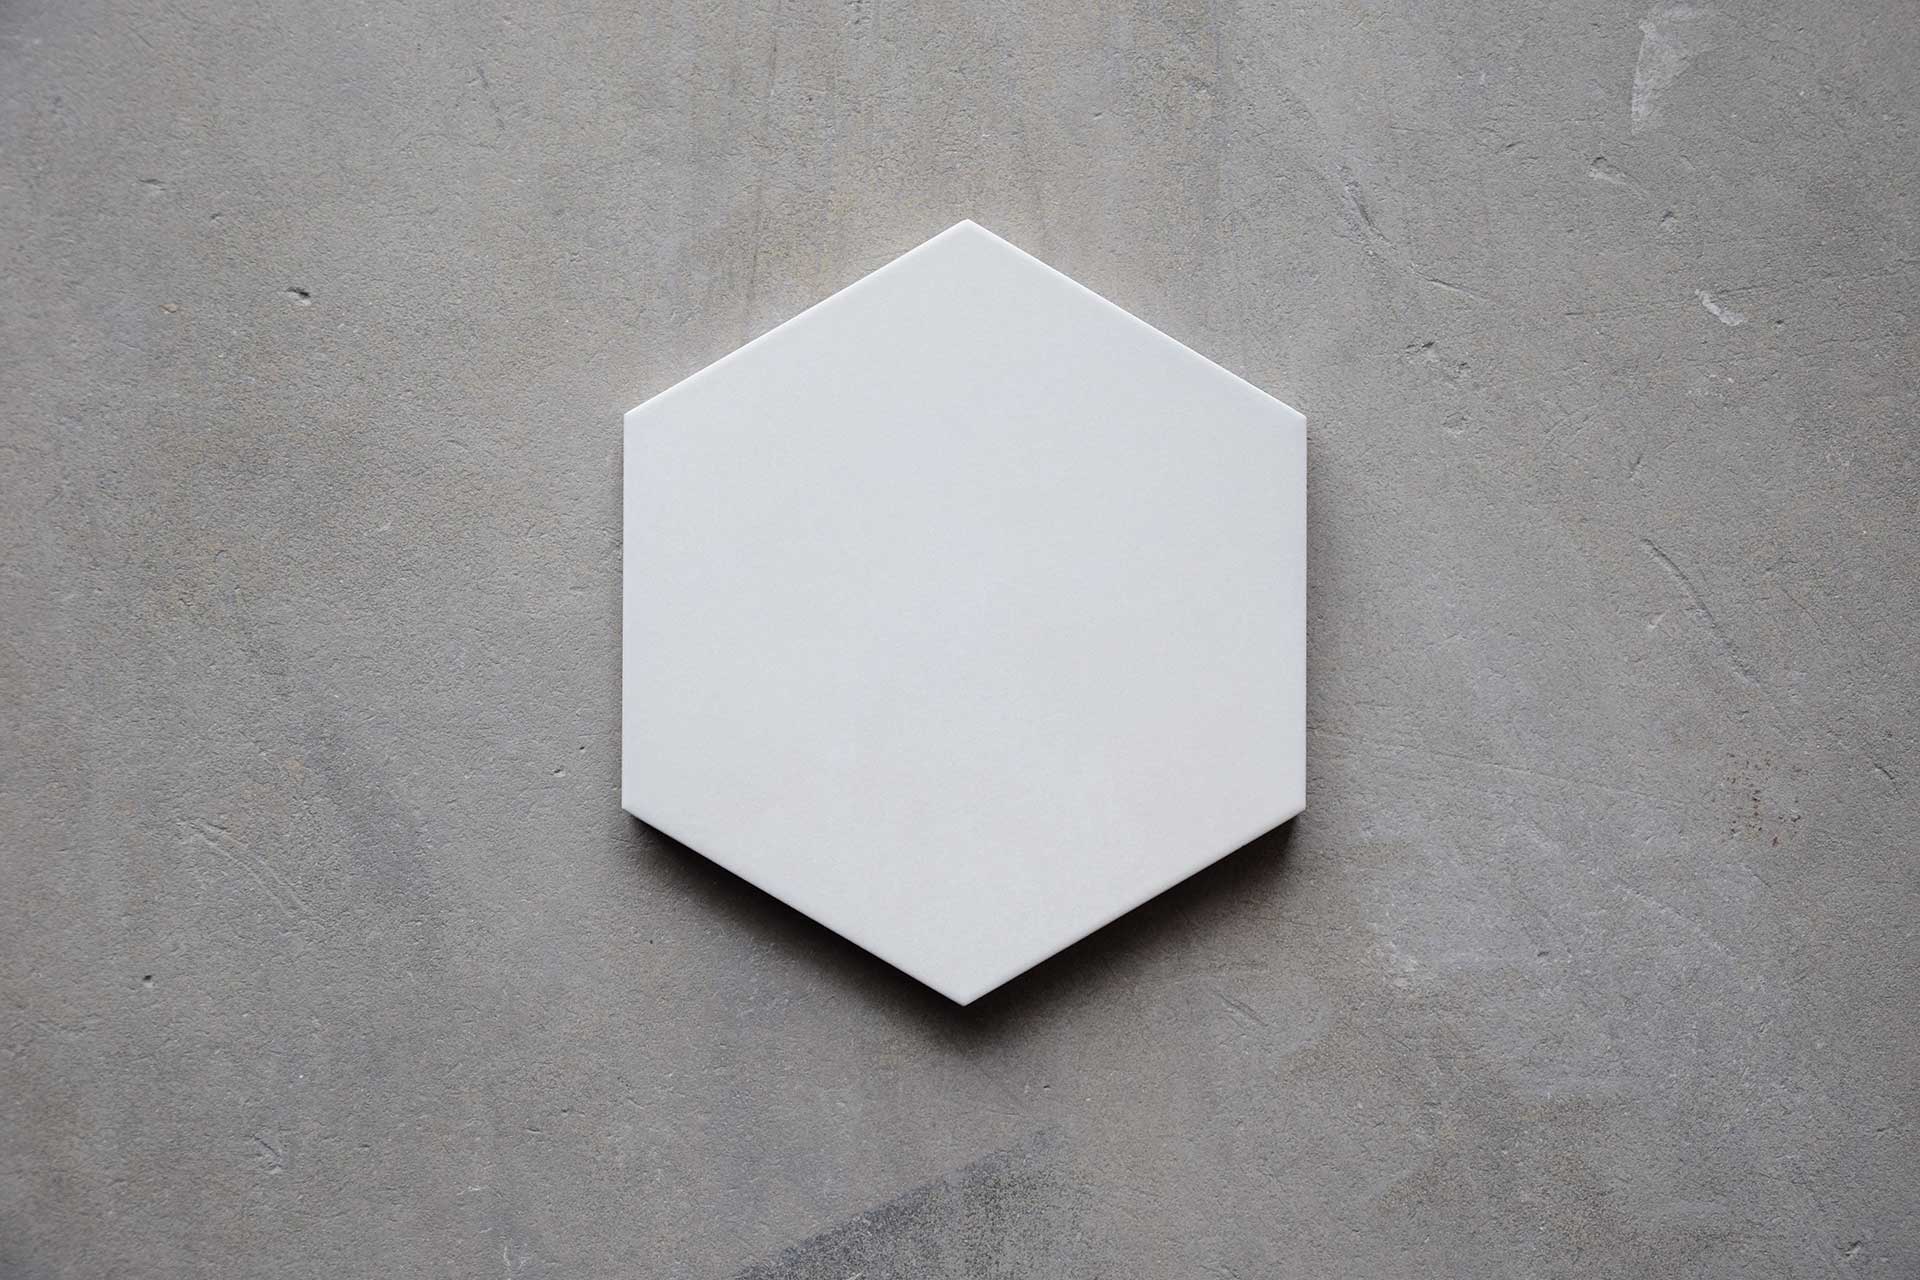 Porcelánico Hexagonal Perla